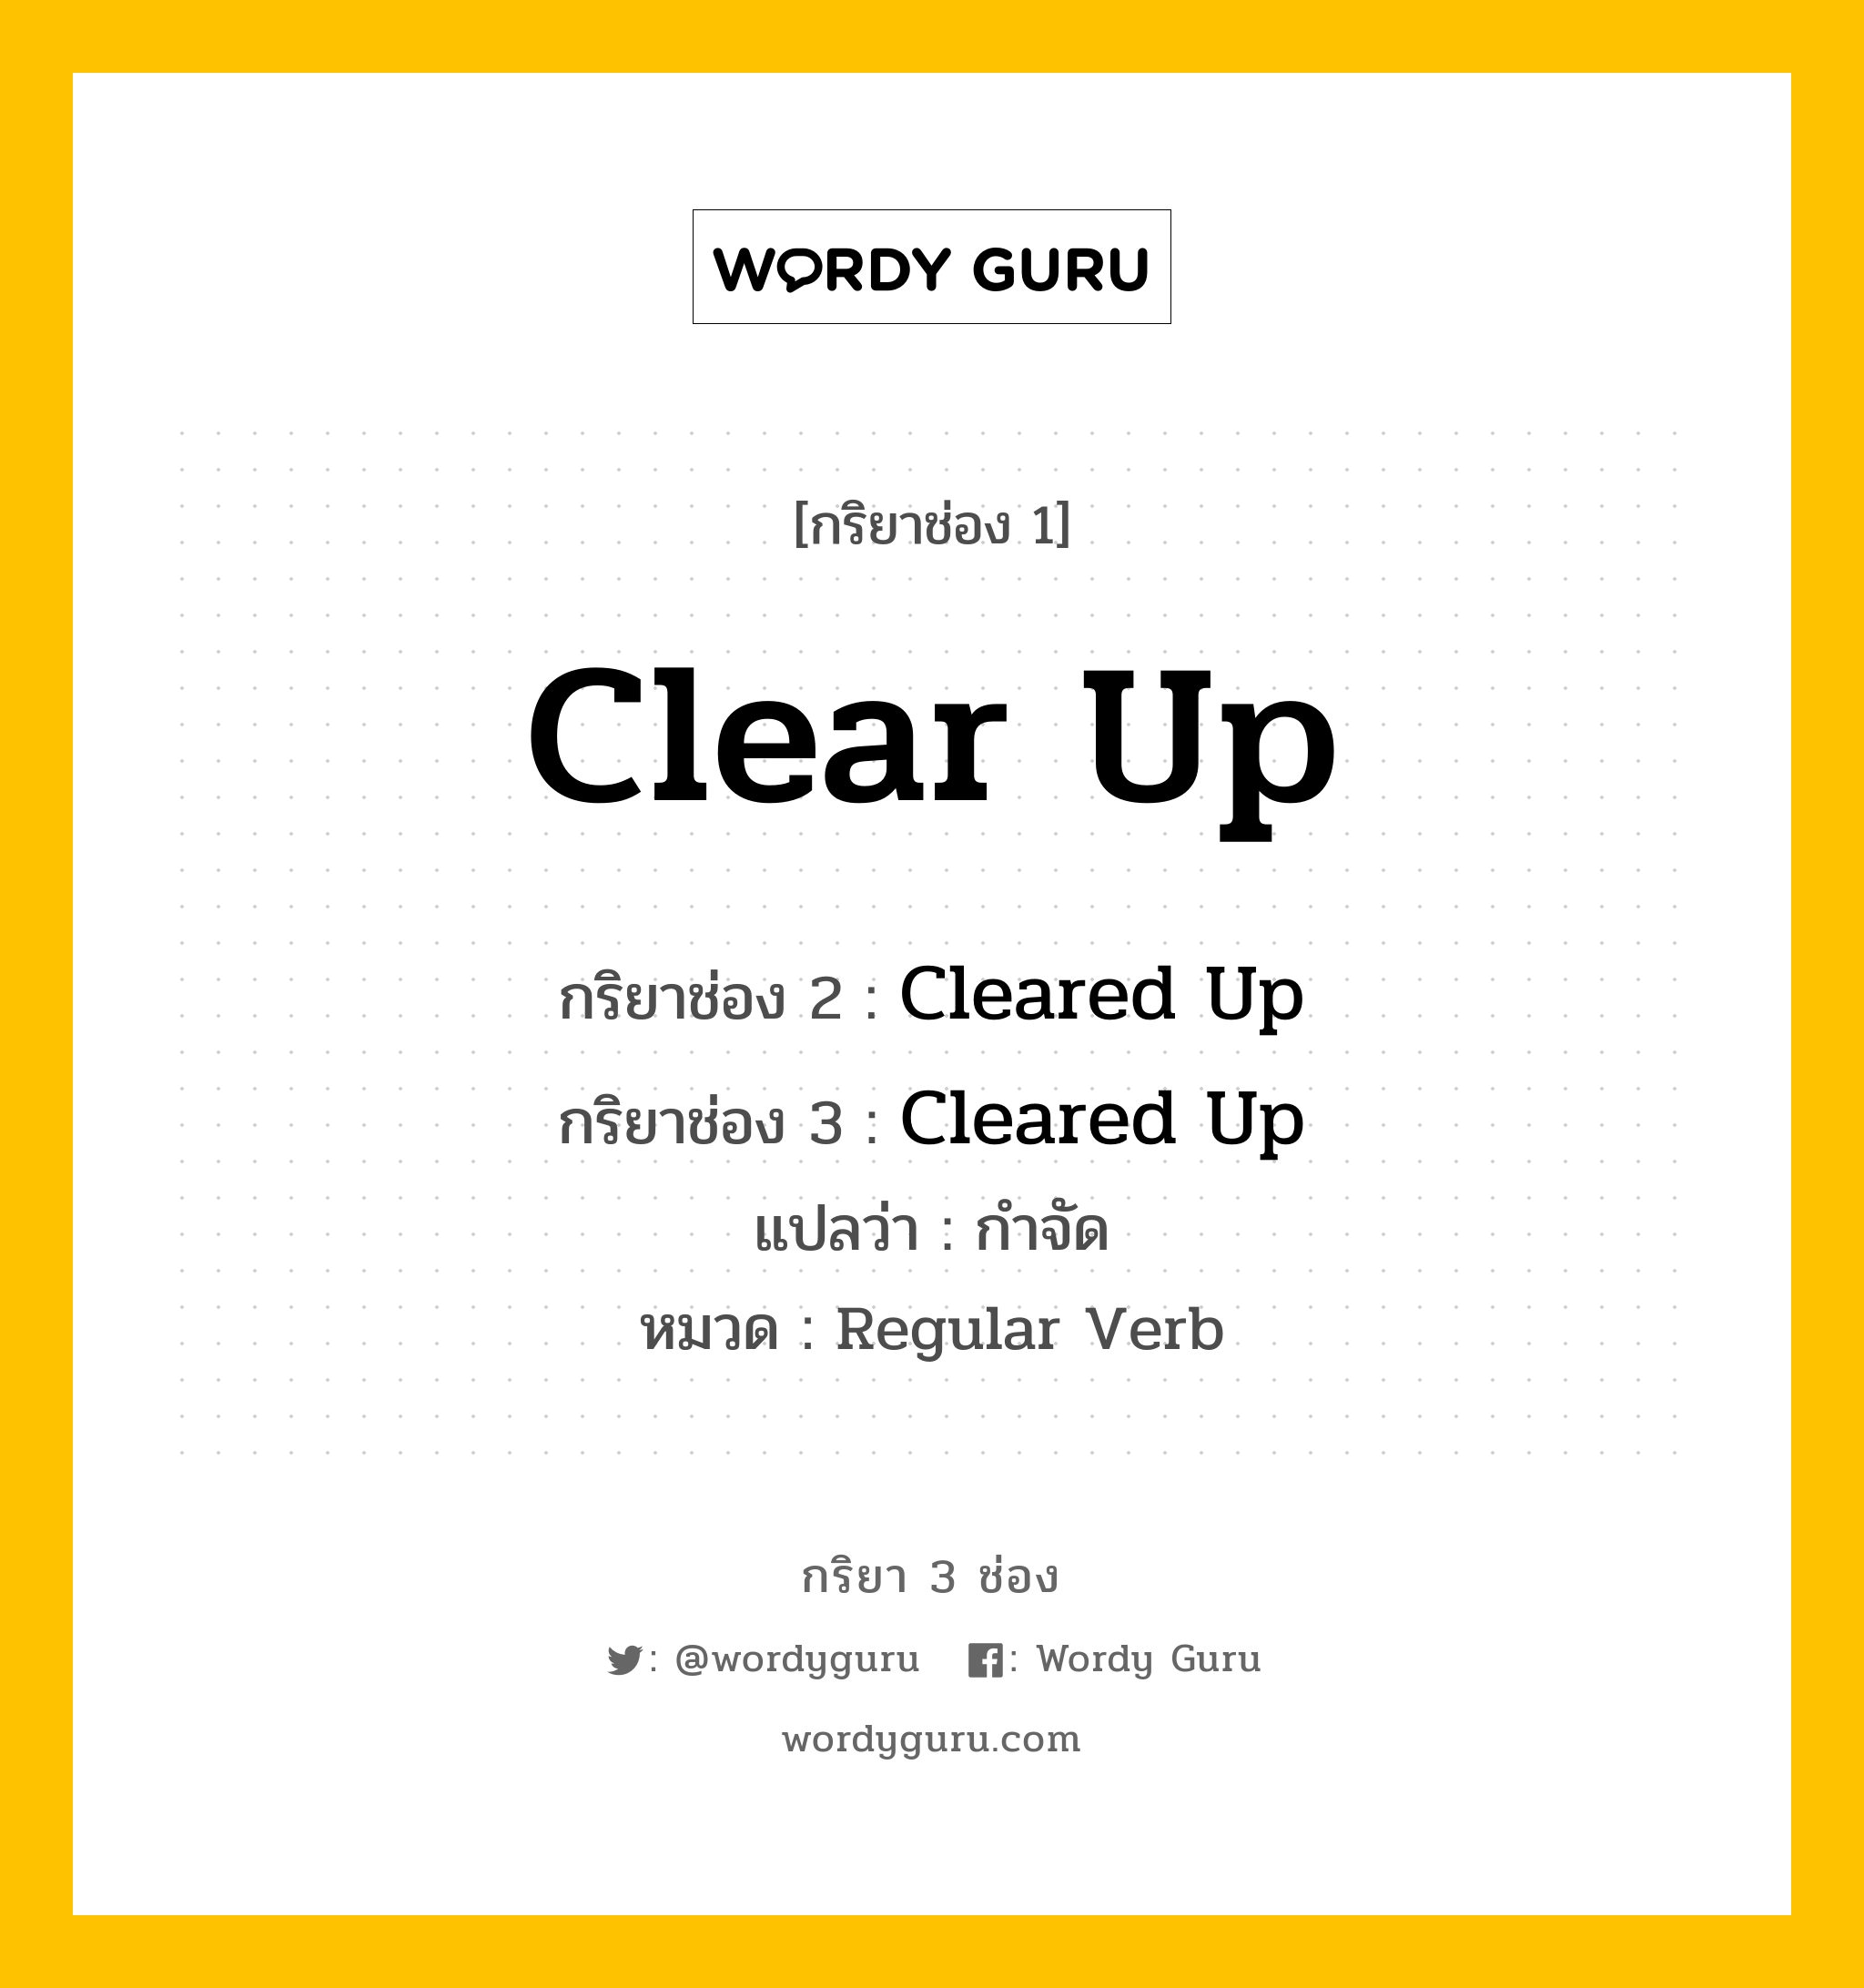 กริยา 3 ช่อง: Clear Up ช่อง 2 Clear Up ช่อง 3 คืออะไร, กริยาช่อง 1 Clear Up กริยาช่อง 2 Cleared Up กริยาช่อง 3 Cleared Up แปลว่า กำจัด หมวด Regular Verb หมวด Regular Verb